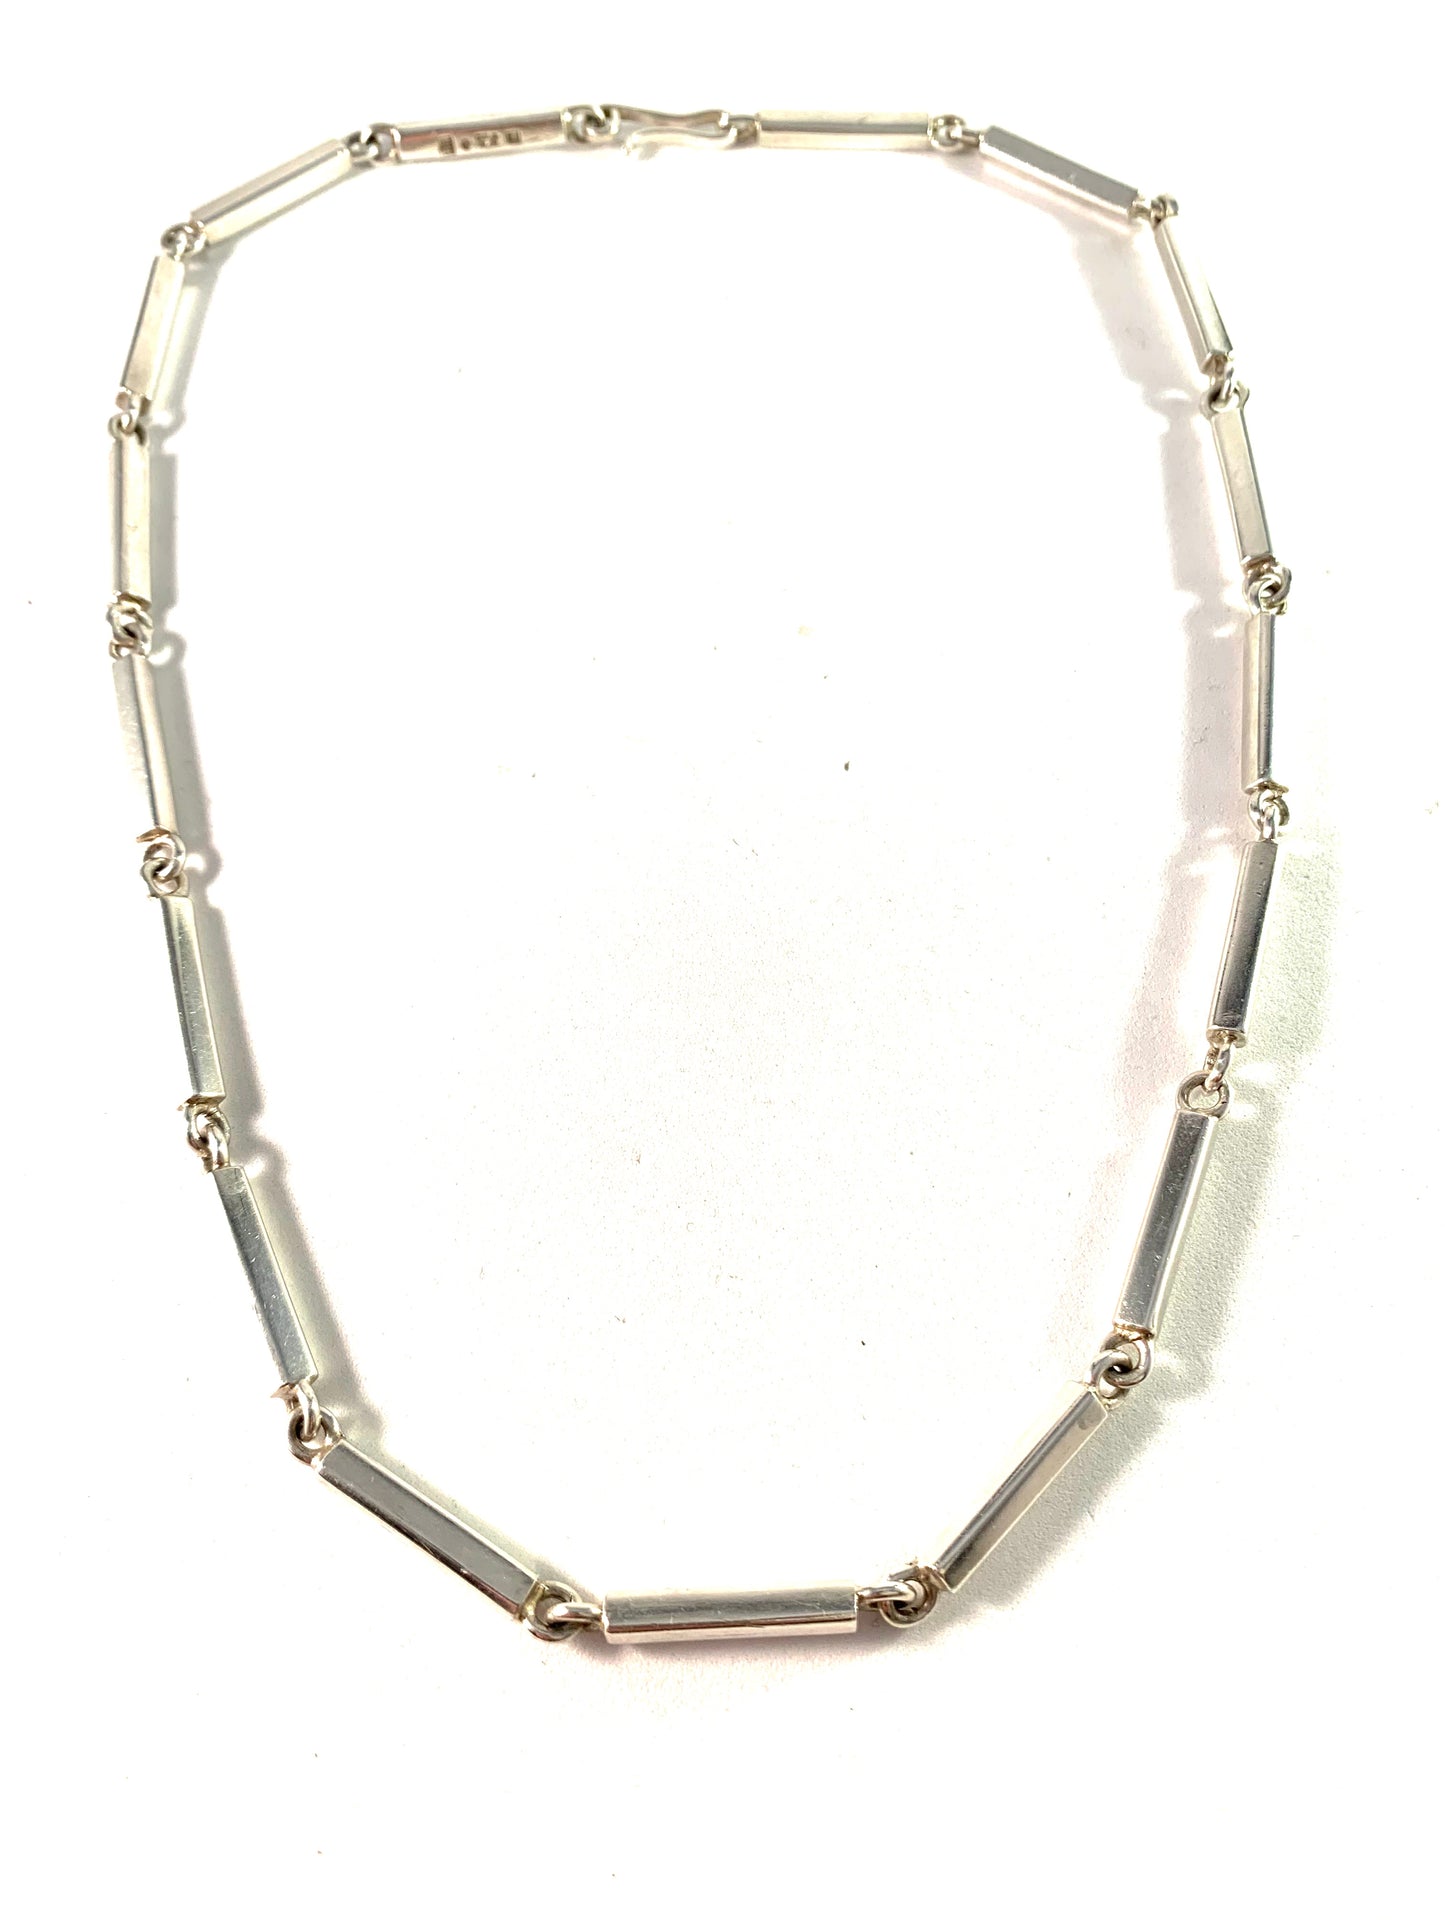 Acke R Tötterman, Sweden 1954 Vintage Sterling Silver Link Necklace. Signed.